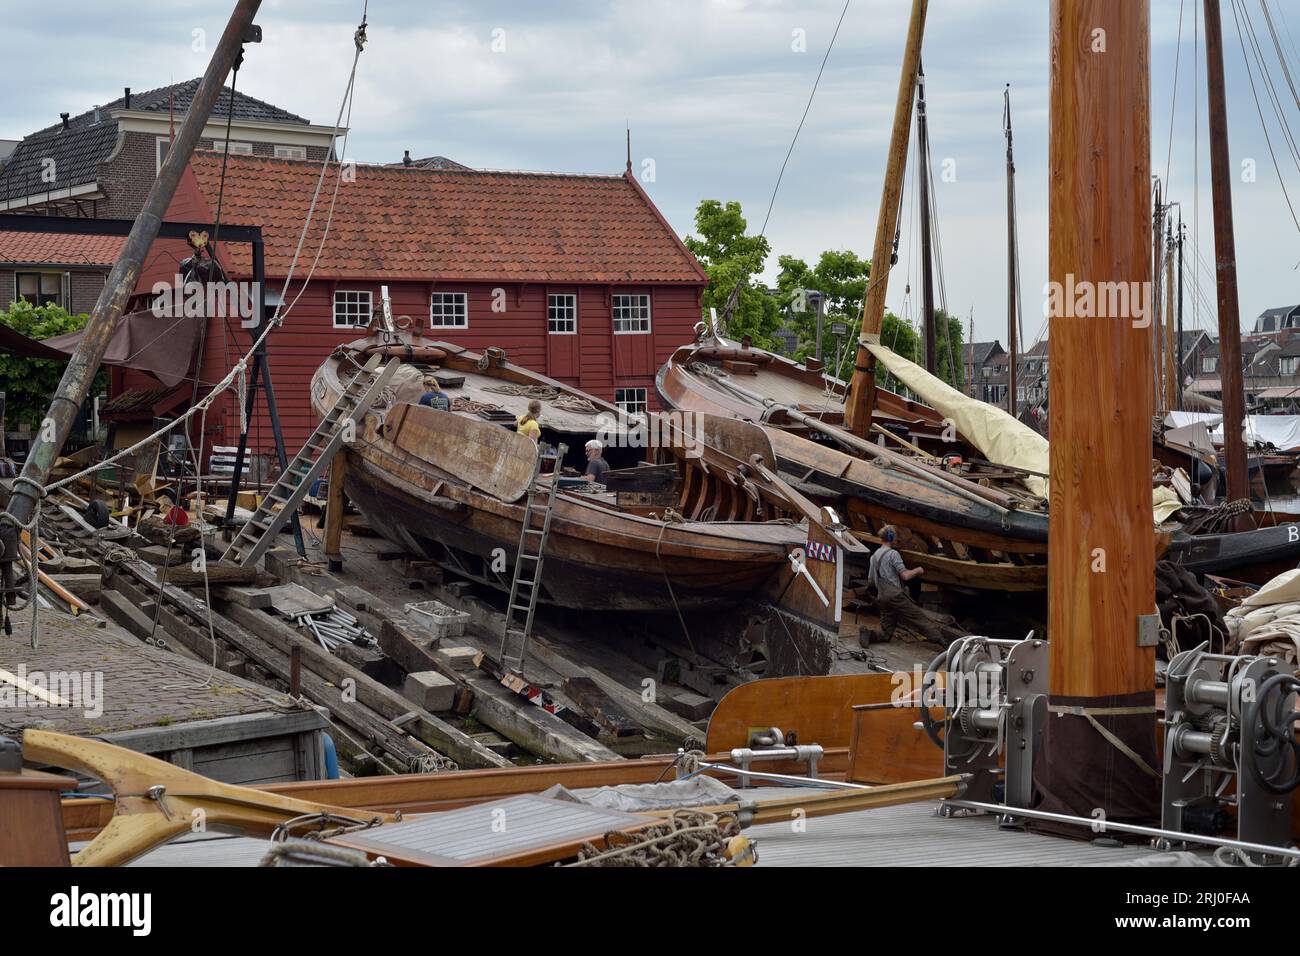 Barca da pesca in fase di riparazione/ristrutturazione sullo scalo del vecchio porto di Bunschoten-Spakenburg, Paesi Bassi Foto Stock